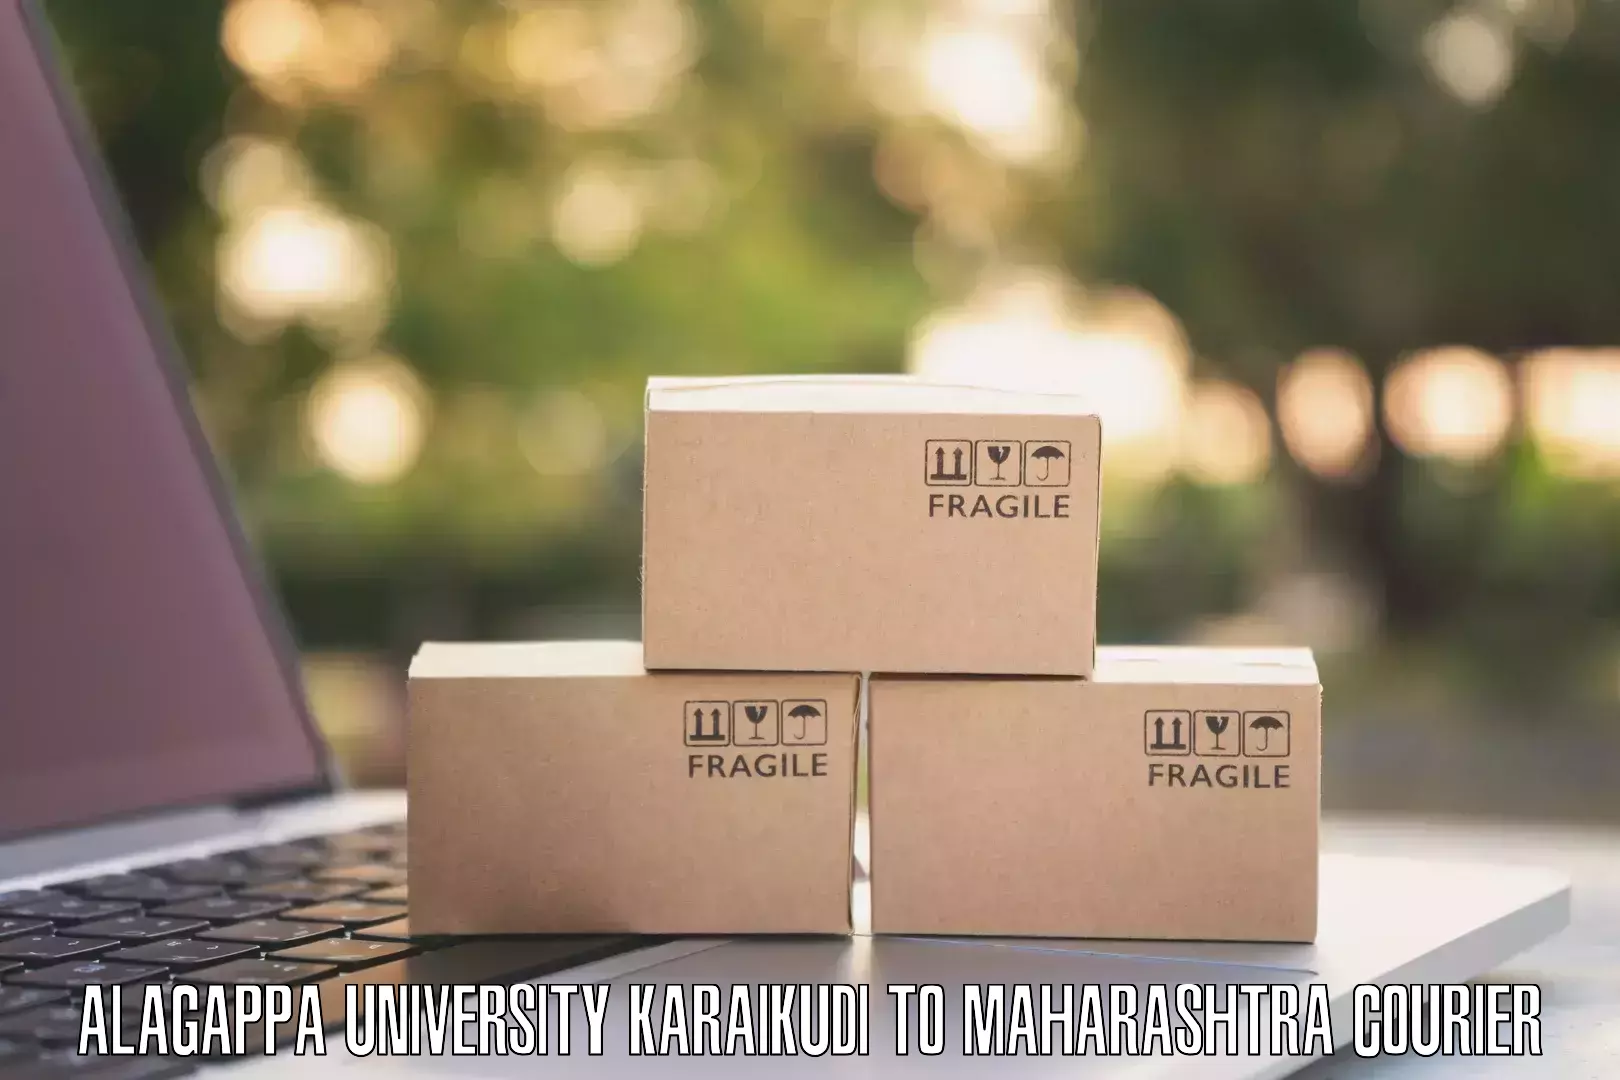 Parcel handling and care Alagappa University Karaikudi to Ratnagiri